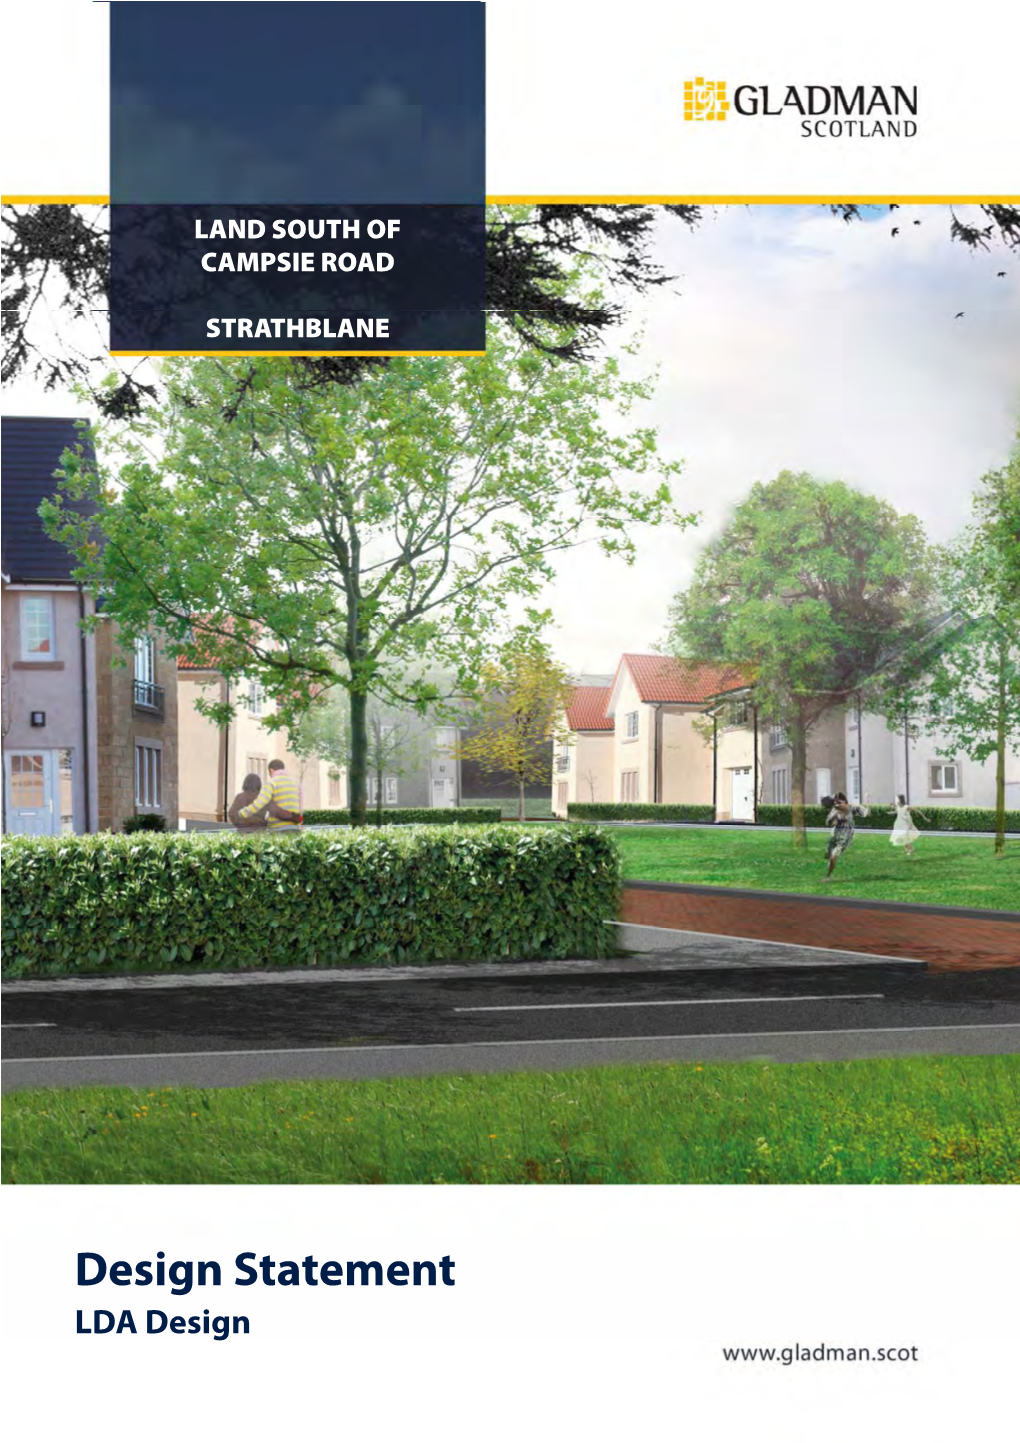 Design Statement LDA Design LAND SOUTH of CAMPSIE ROAD, STRATHBLANE Design Statement May 2017